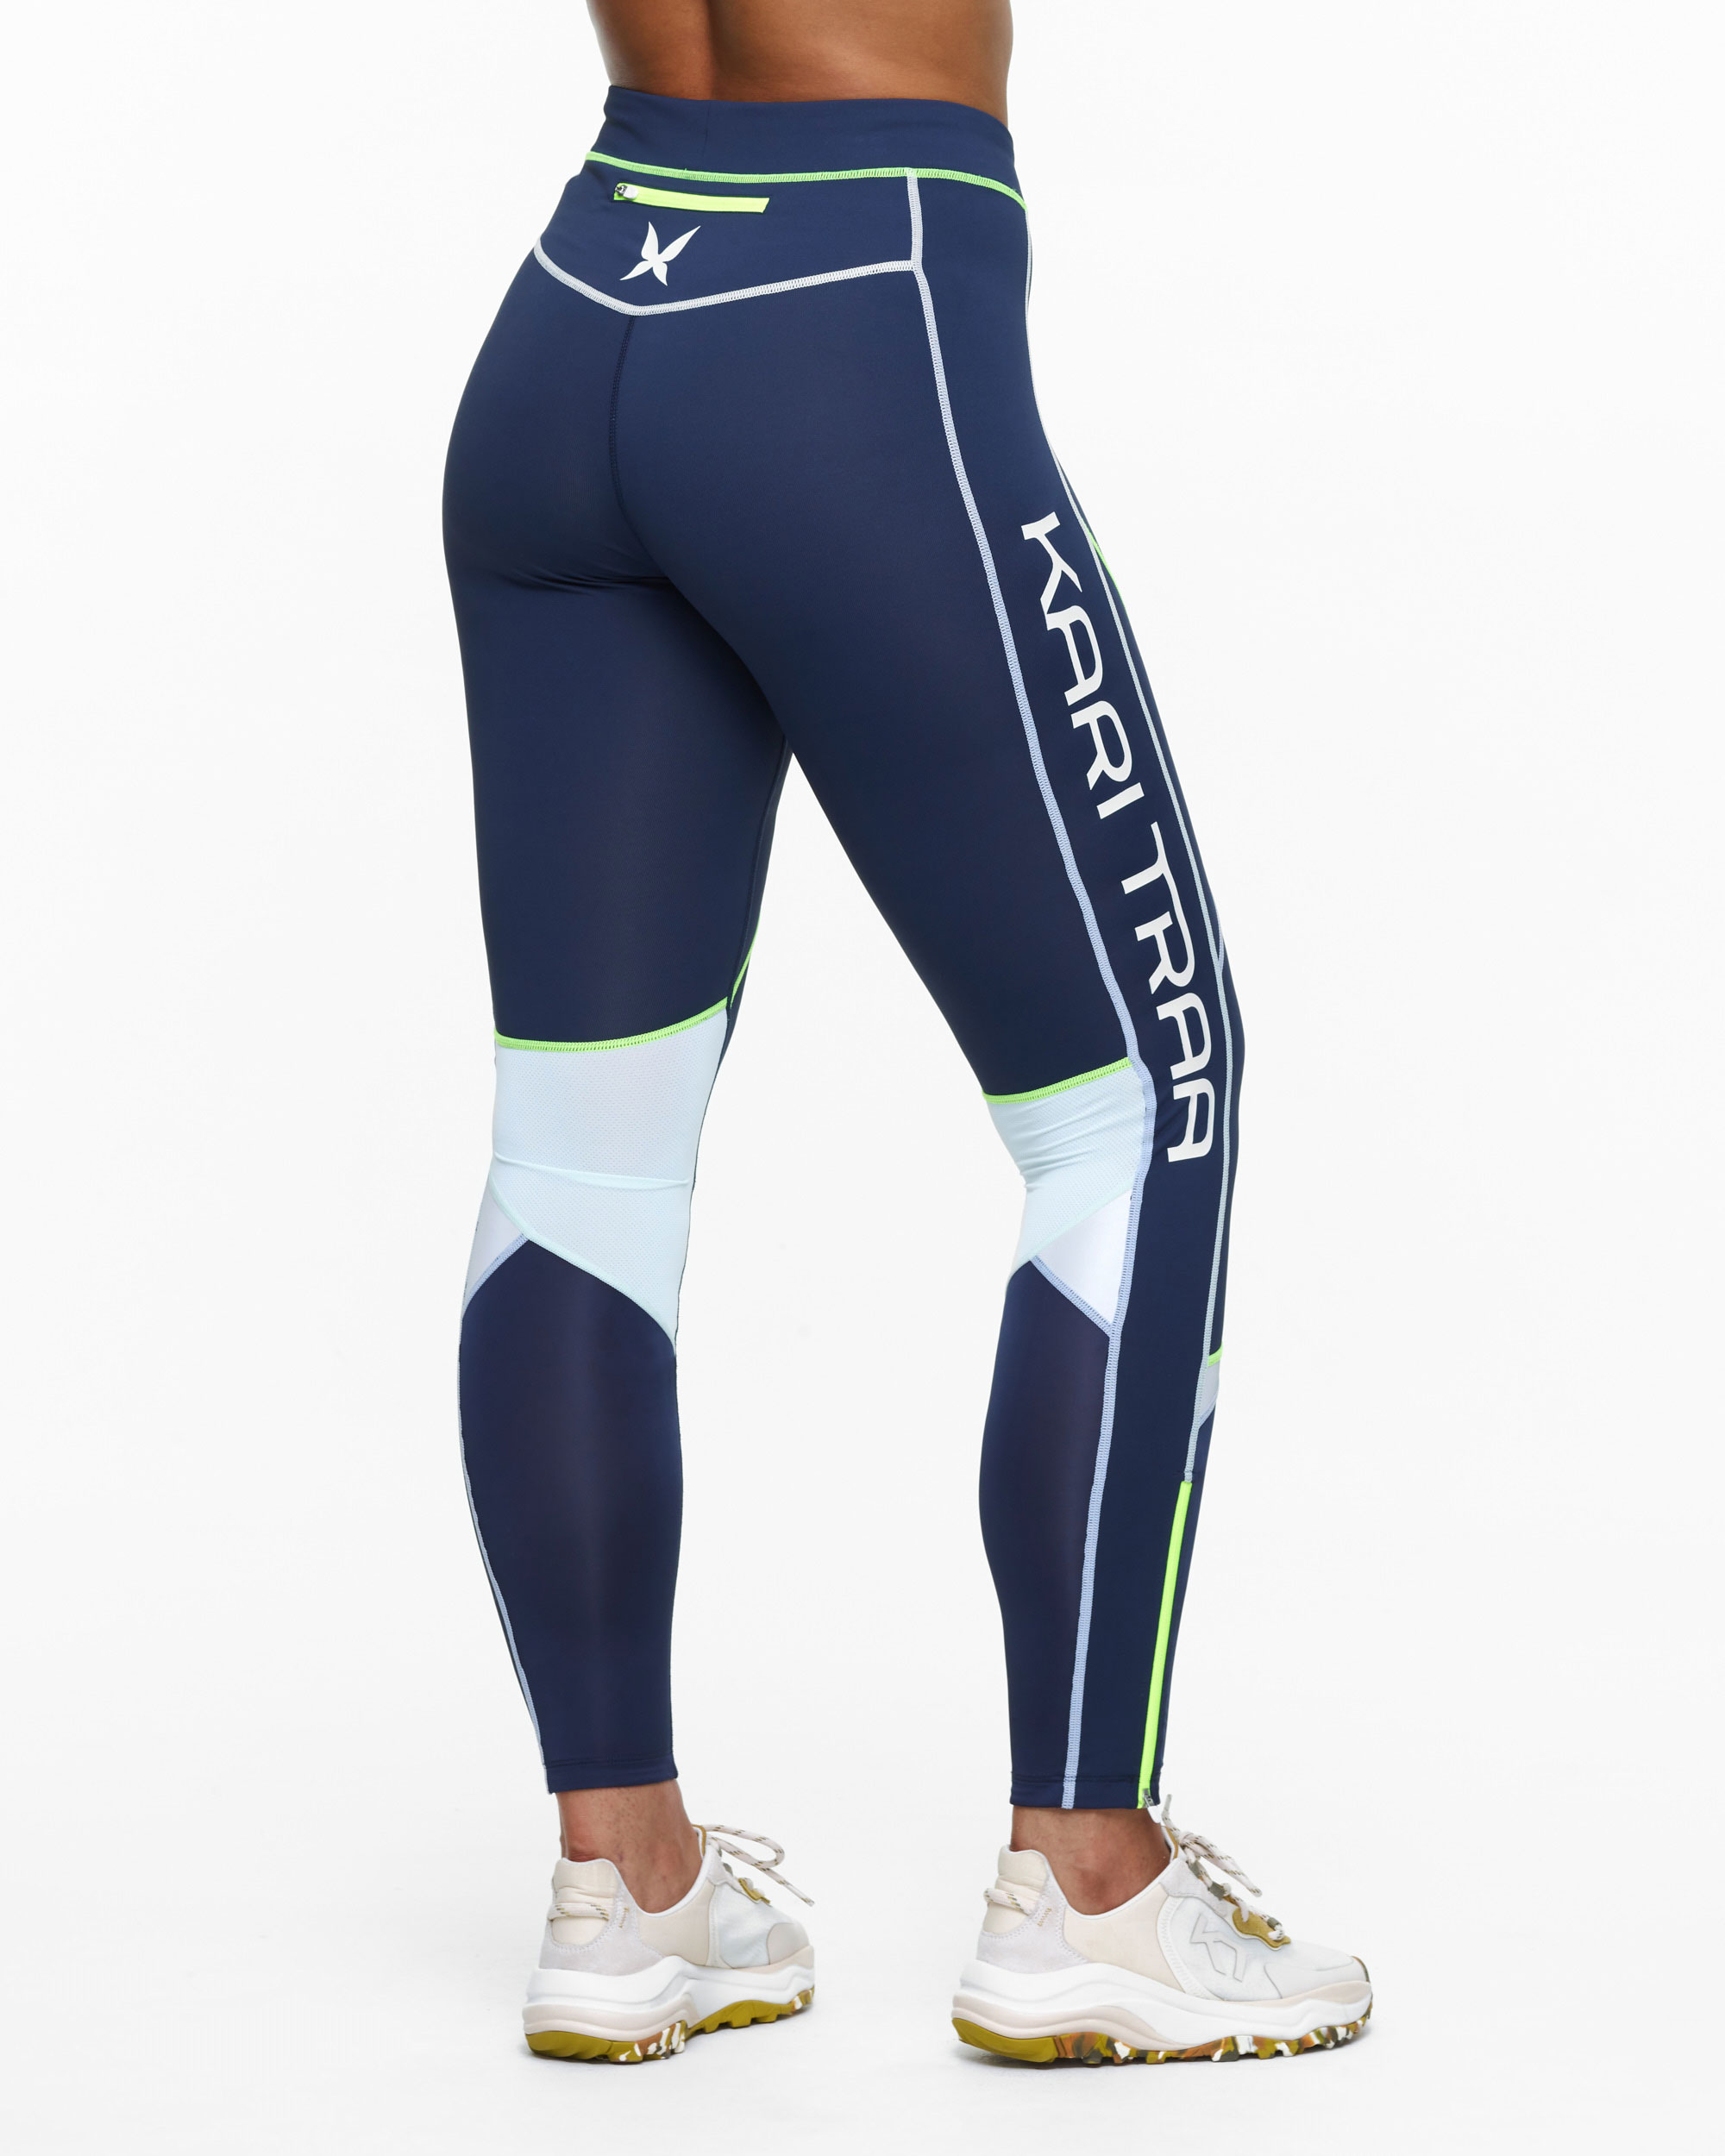 Women's sports leggings